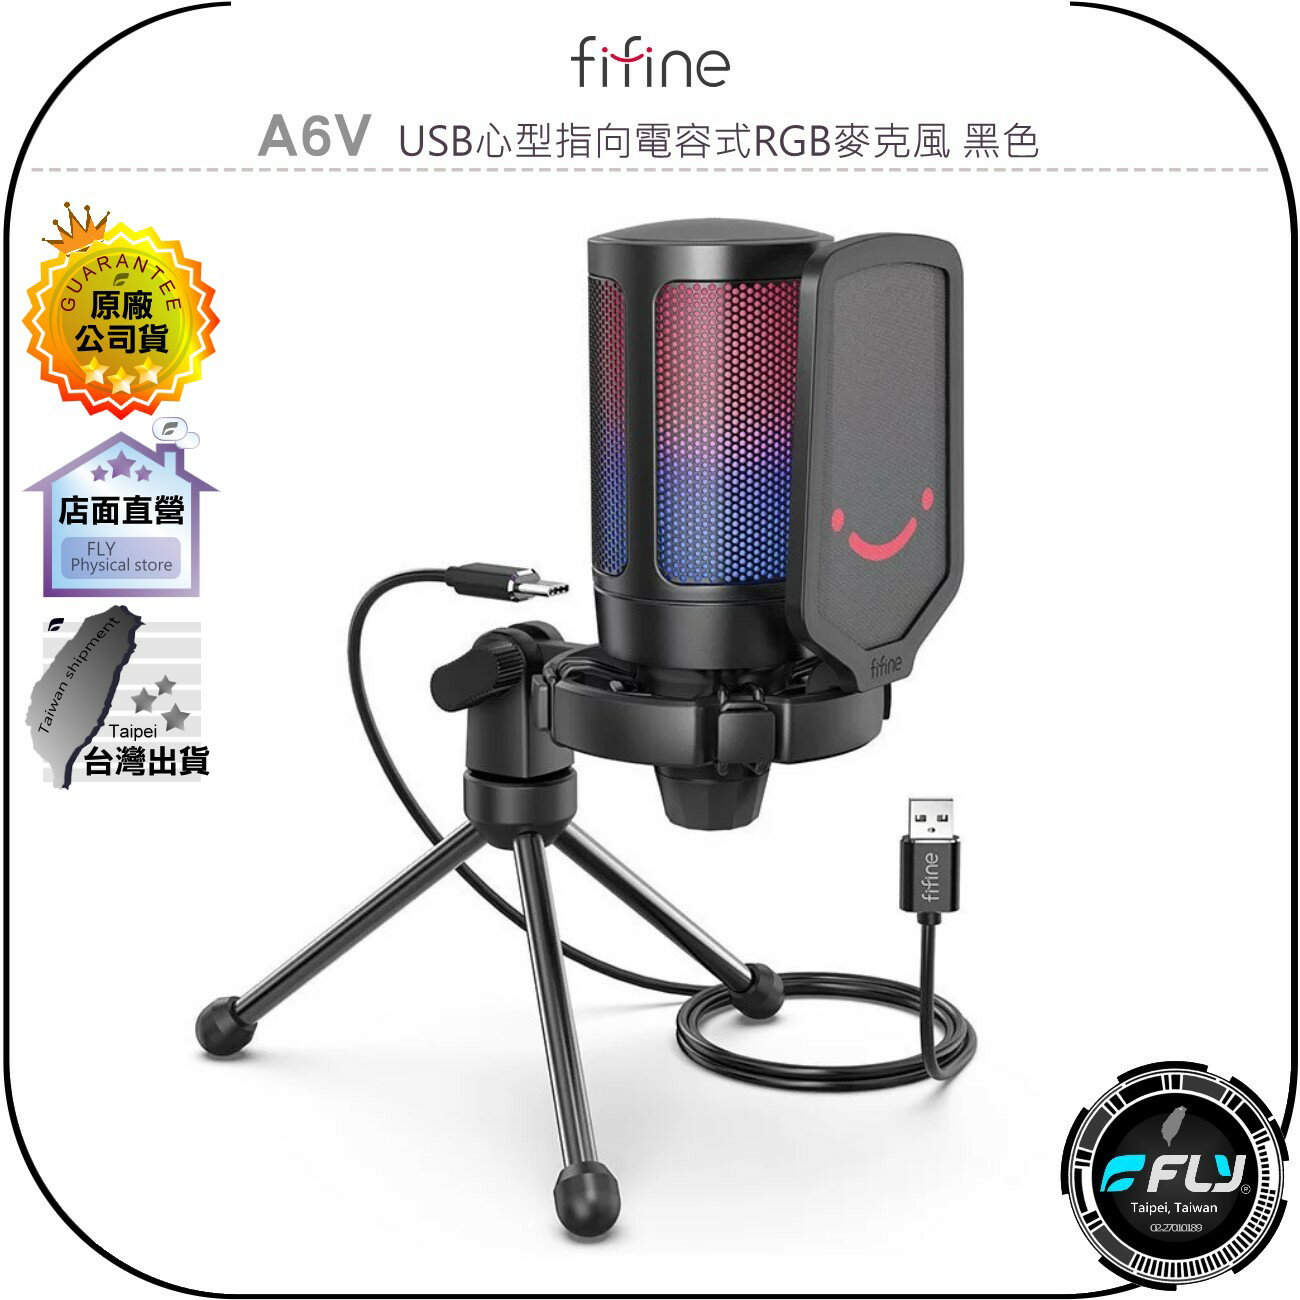 《飛翔無線3C》FIFINE A6V USB心型指向電容式RGB麥克風 黑色◉公司貨◉TYPE-C◉兼容手機◉直播唱歌